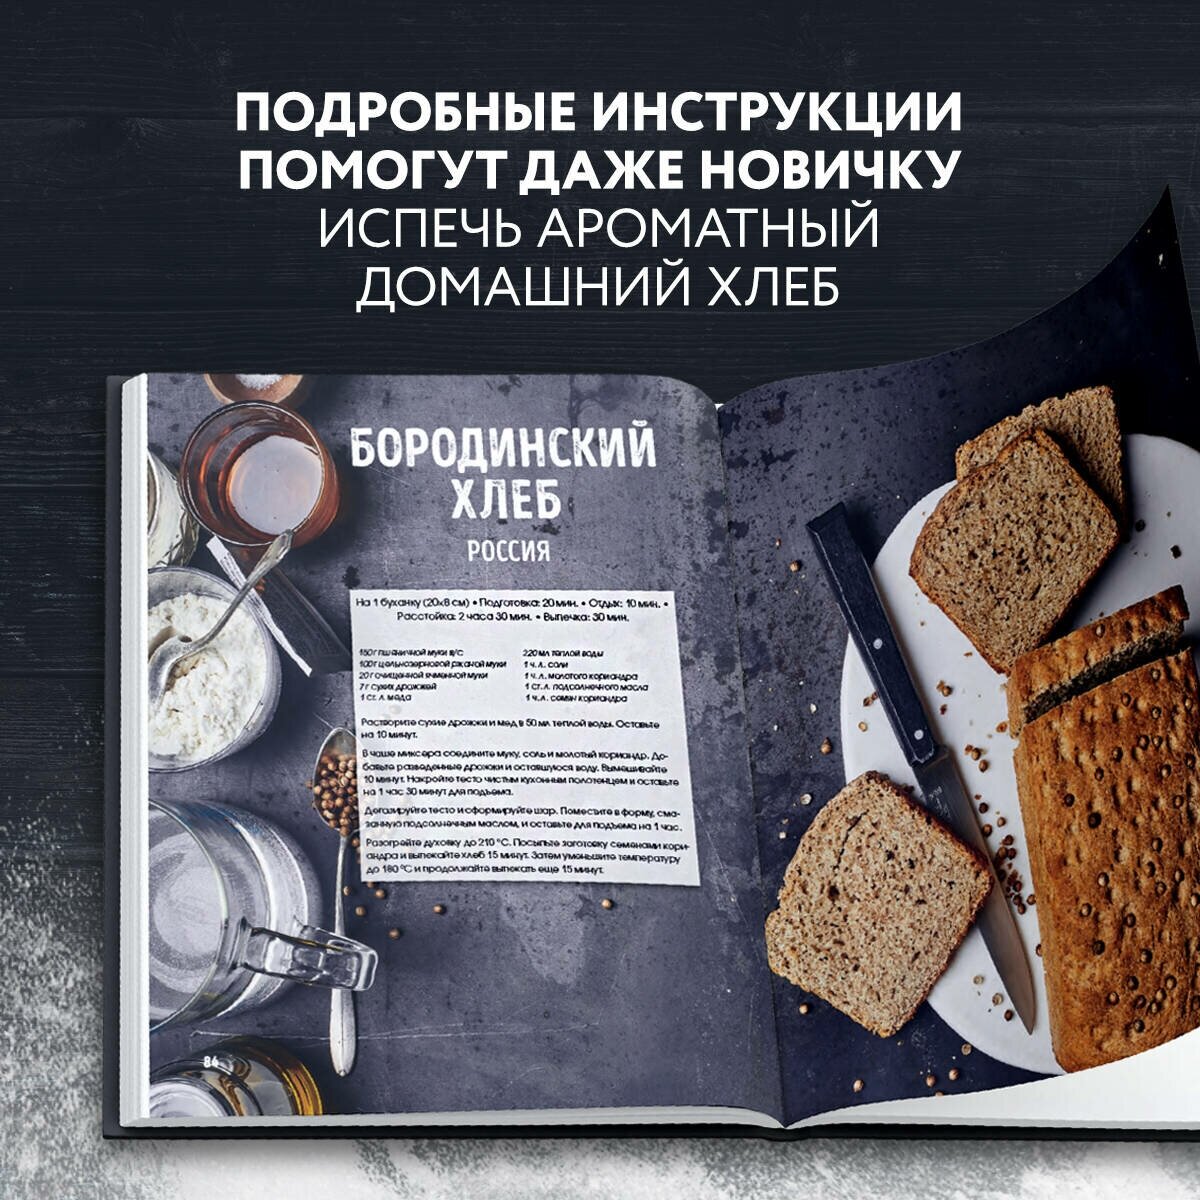 Мир хлеба. 100 лучших рецептов домашнего хлеба со всего мира - фото №3